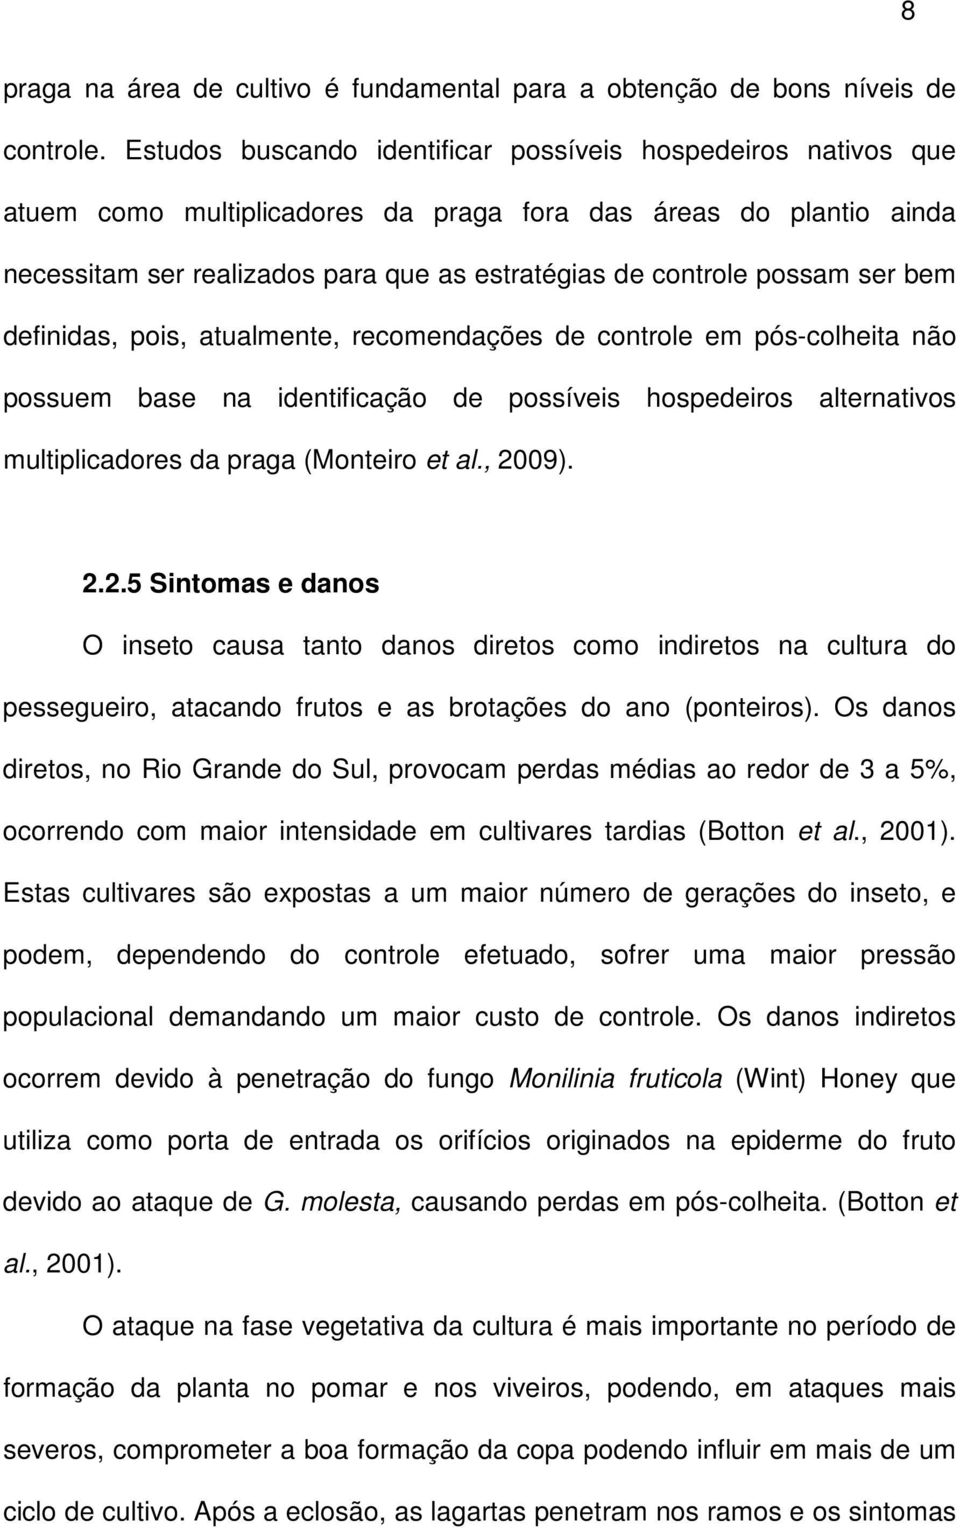 ser bem definidas, pois, atualmente, recomendações de controle em pós-colheita não possuem base na identificação de possíveis hospedeiros alternativos multiplicadores da praga (Monteiro et al., 2009).